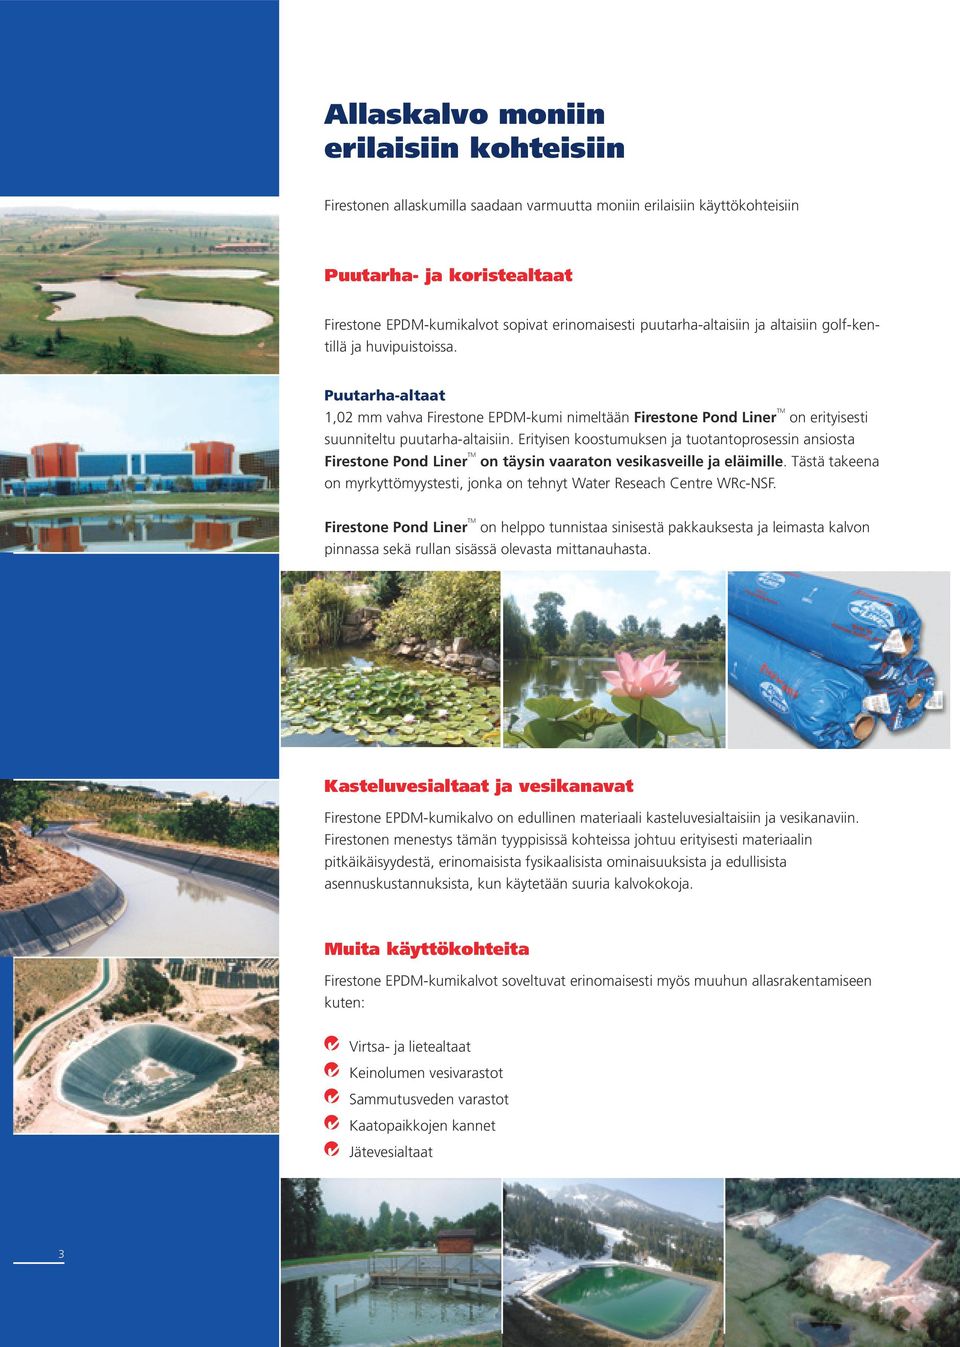 Erityisen koostumuksen ja tuotantoprosessin ansiosta Firestone Pond Liner TM on täysin vaaraton vesikasveille ja eläimille.